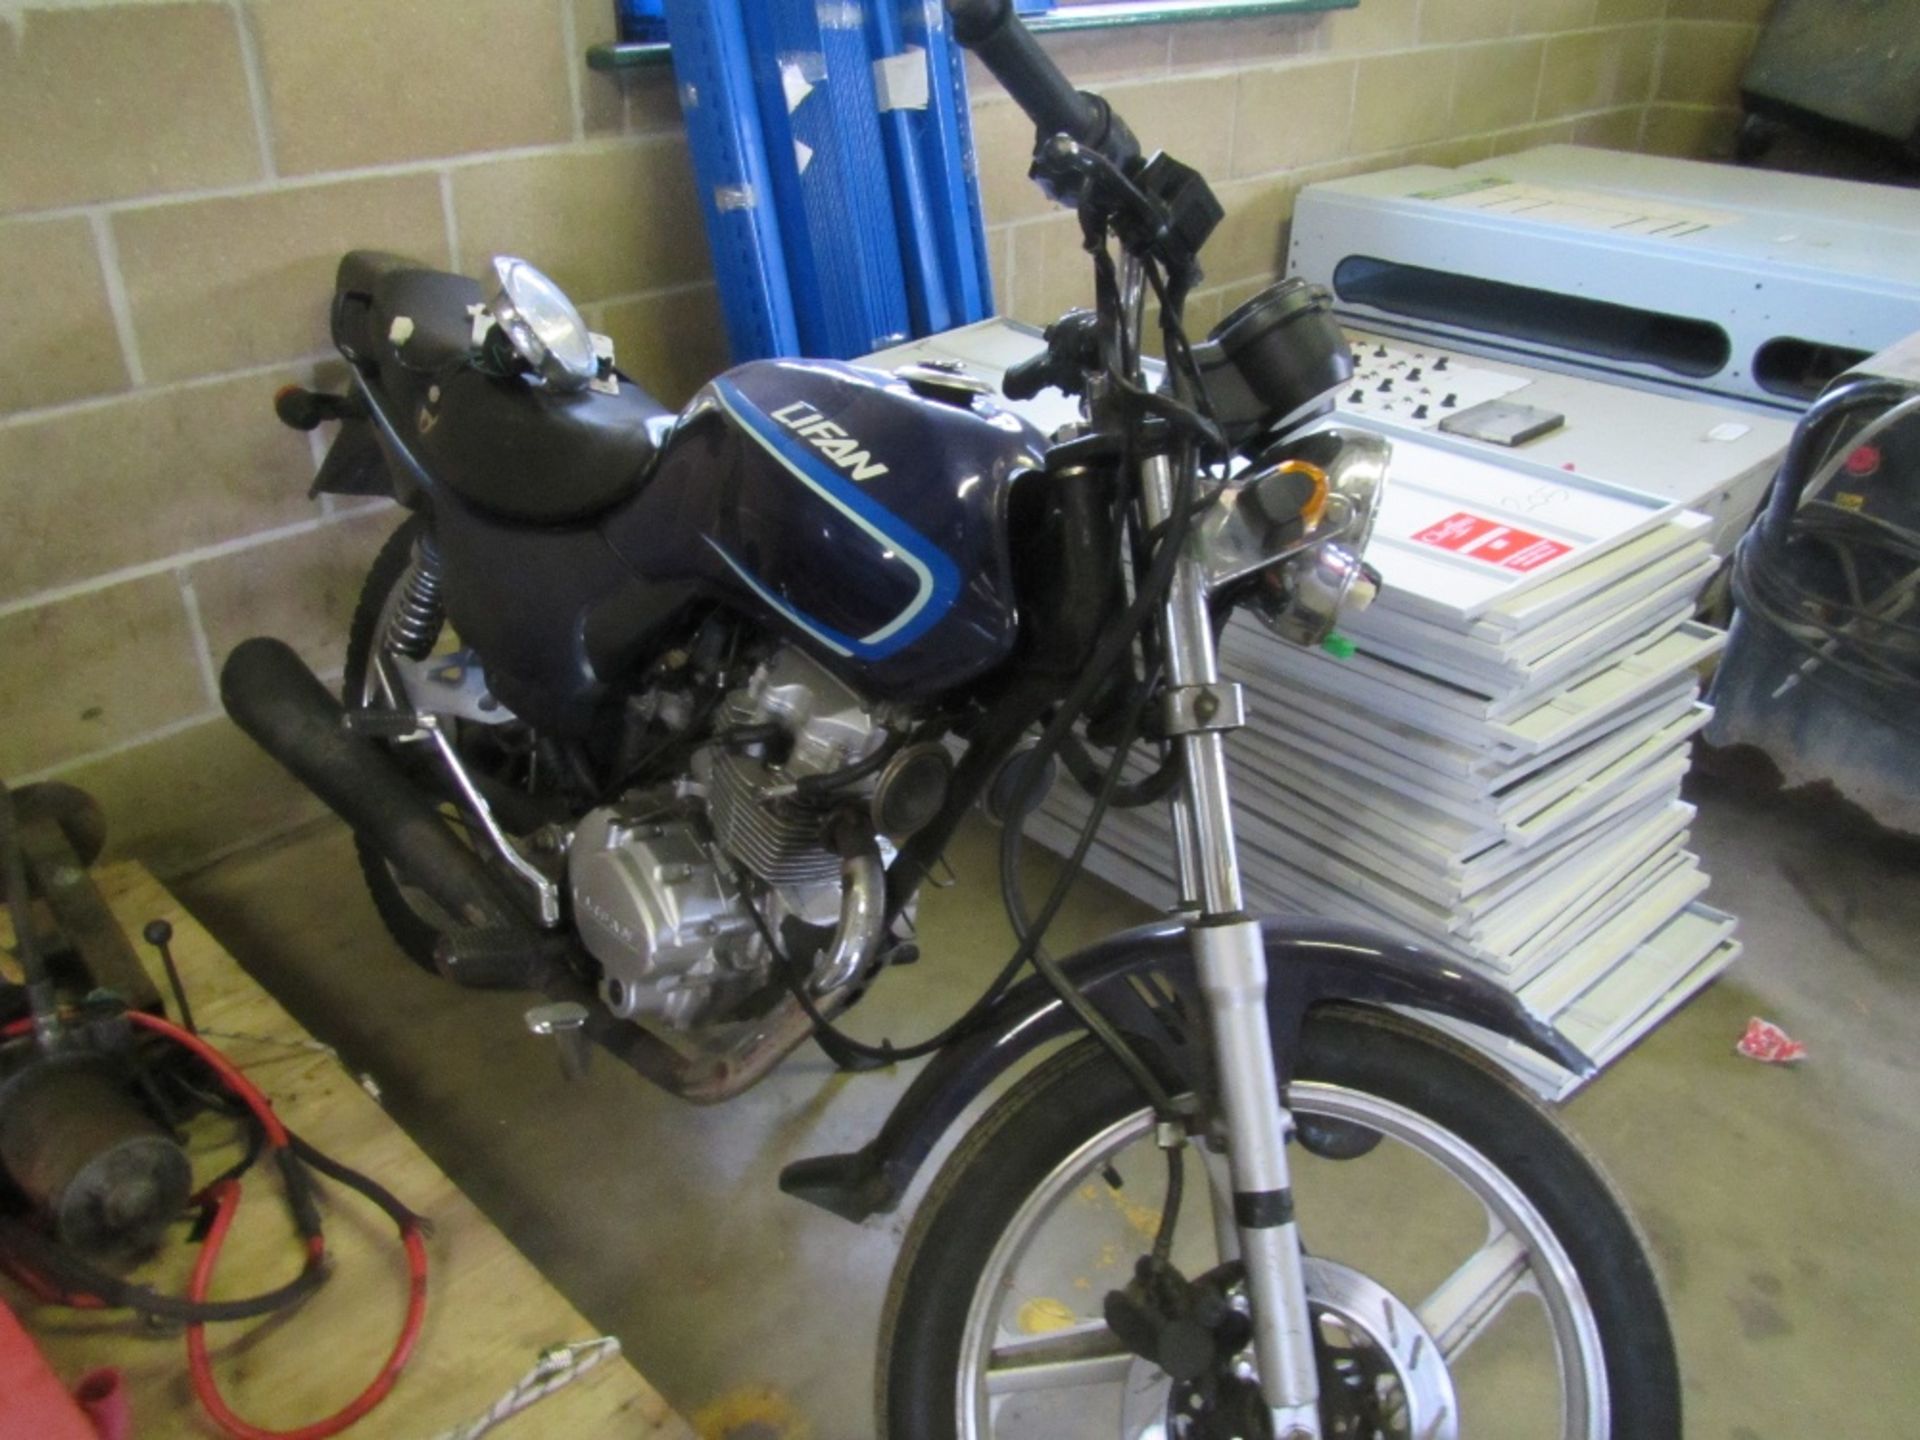 125cc Motorbike. Reg. No. EU61 AOP - Image 2 of 3